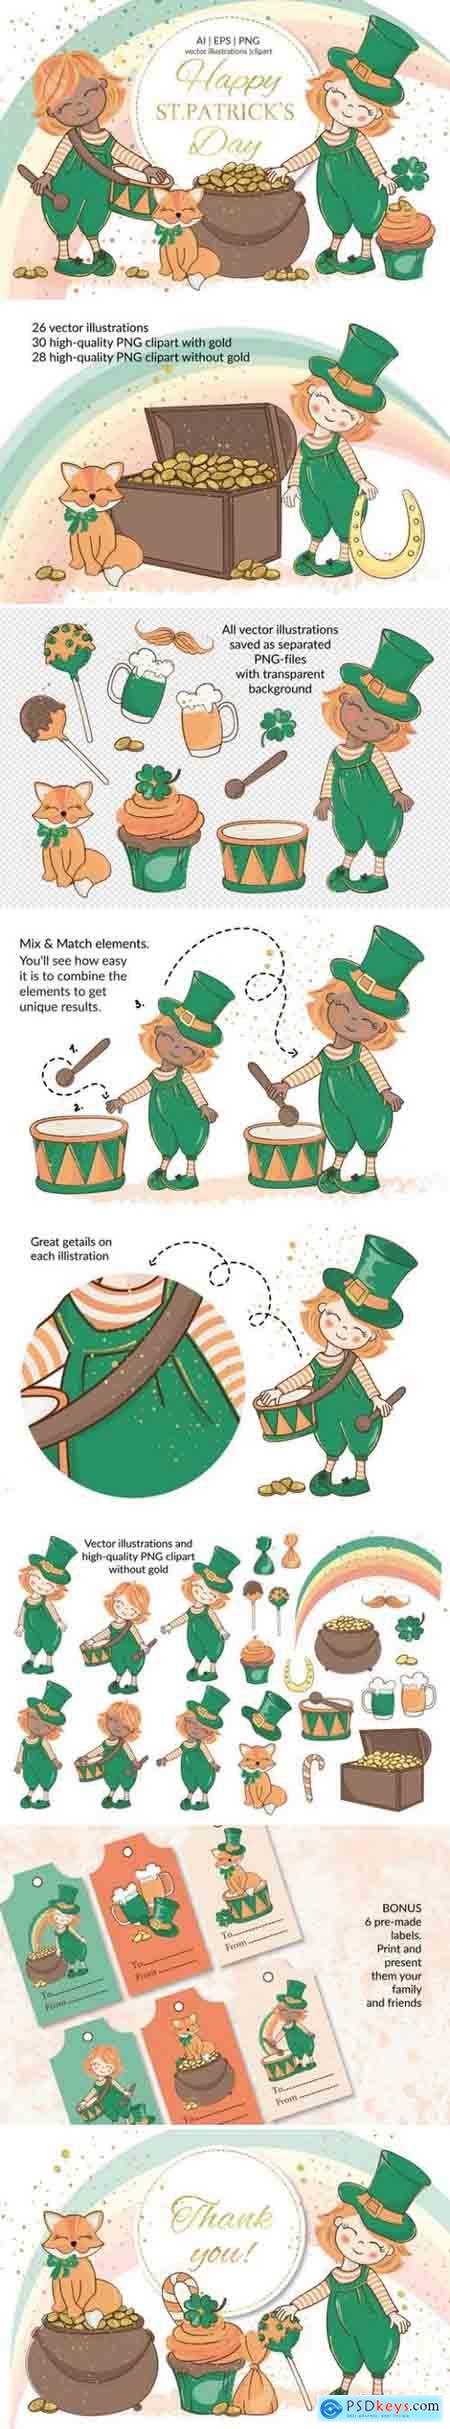 St Patricks day Holiday Cartoon